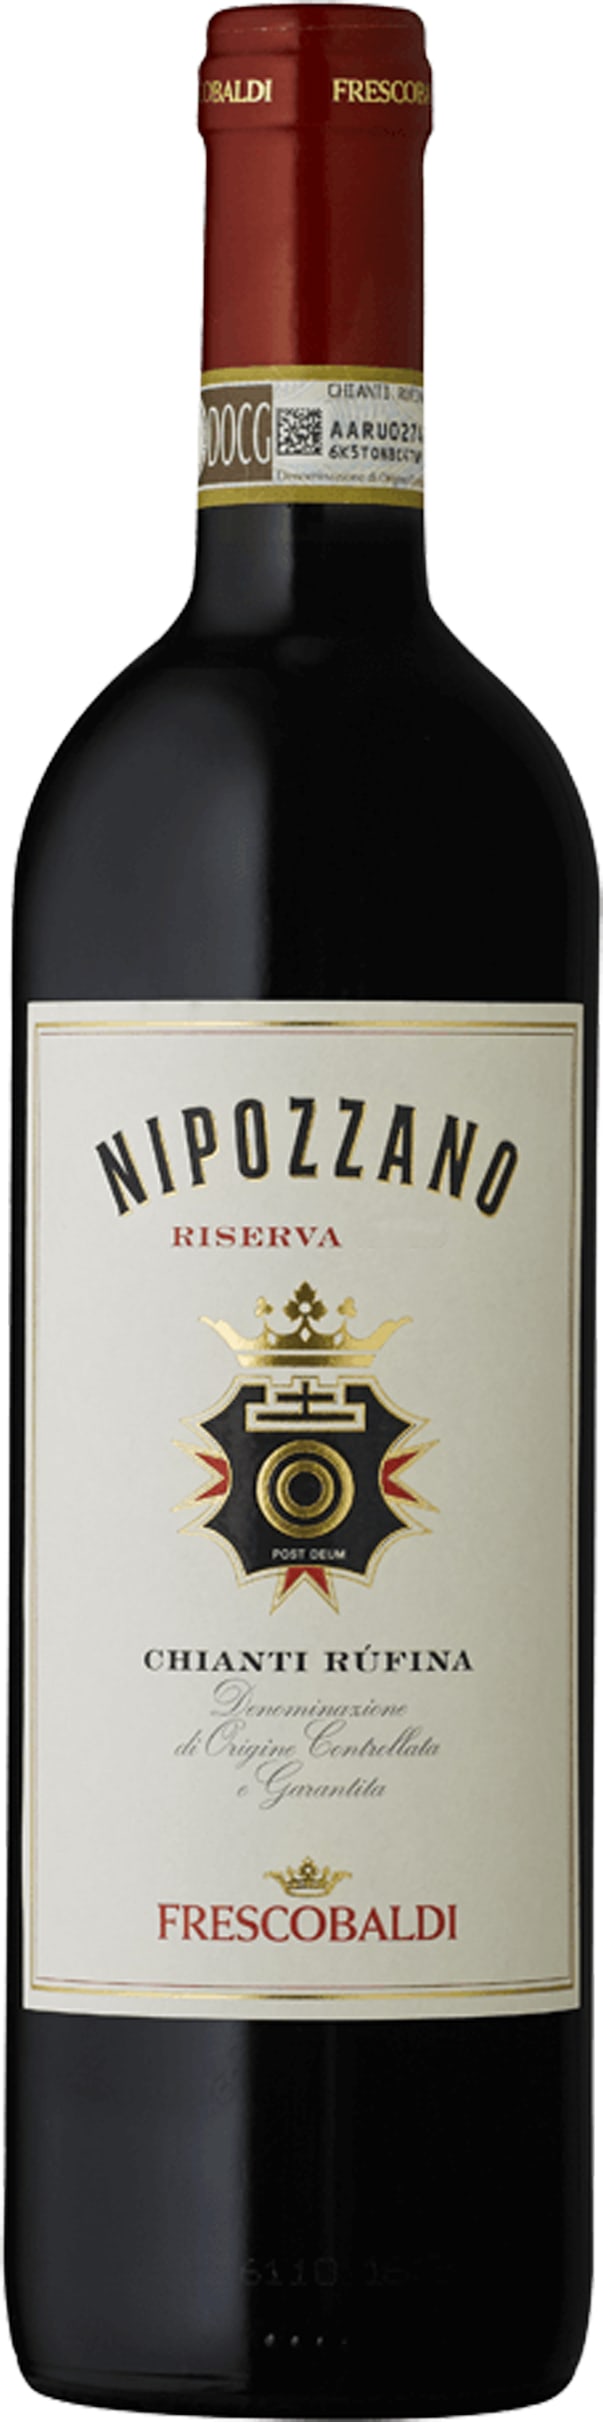 Frescobaldi Nipozzano Chianti Rufina Riserva 2018 75cl - Buy Frescobaldi Wines from GREAT WINES DIRECT wine shop